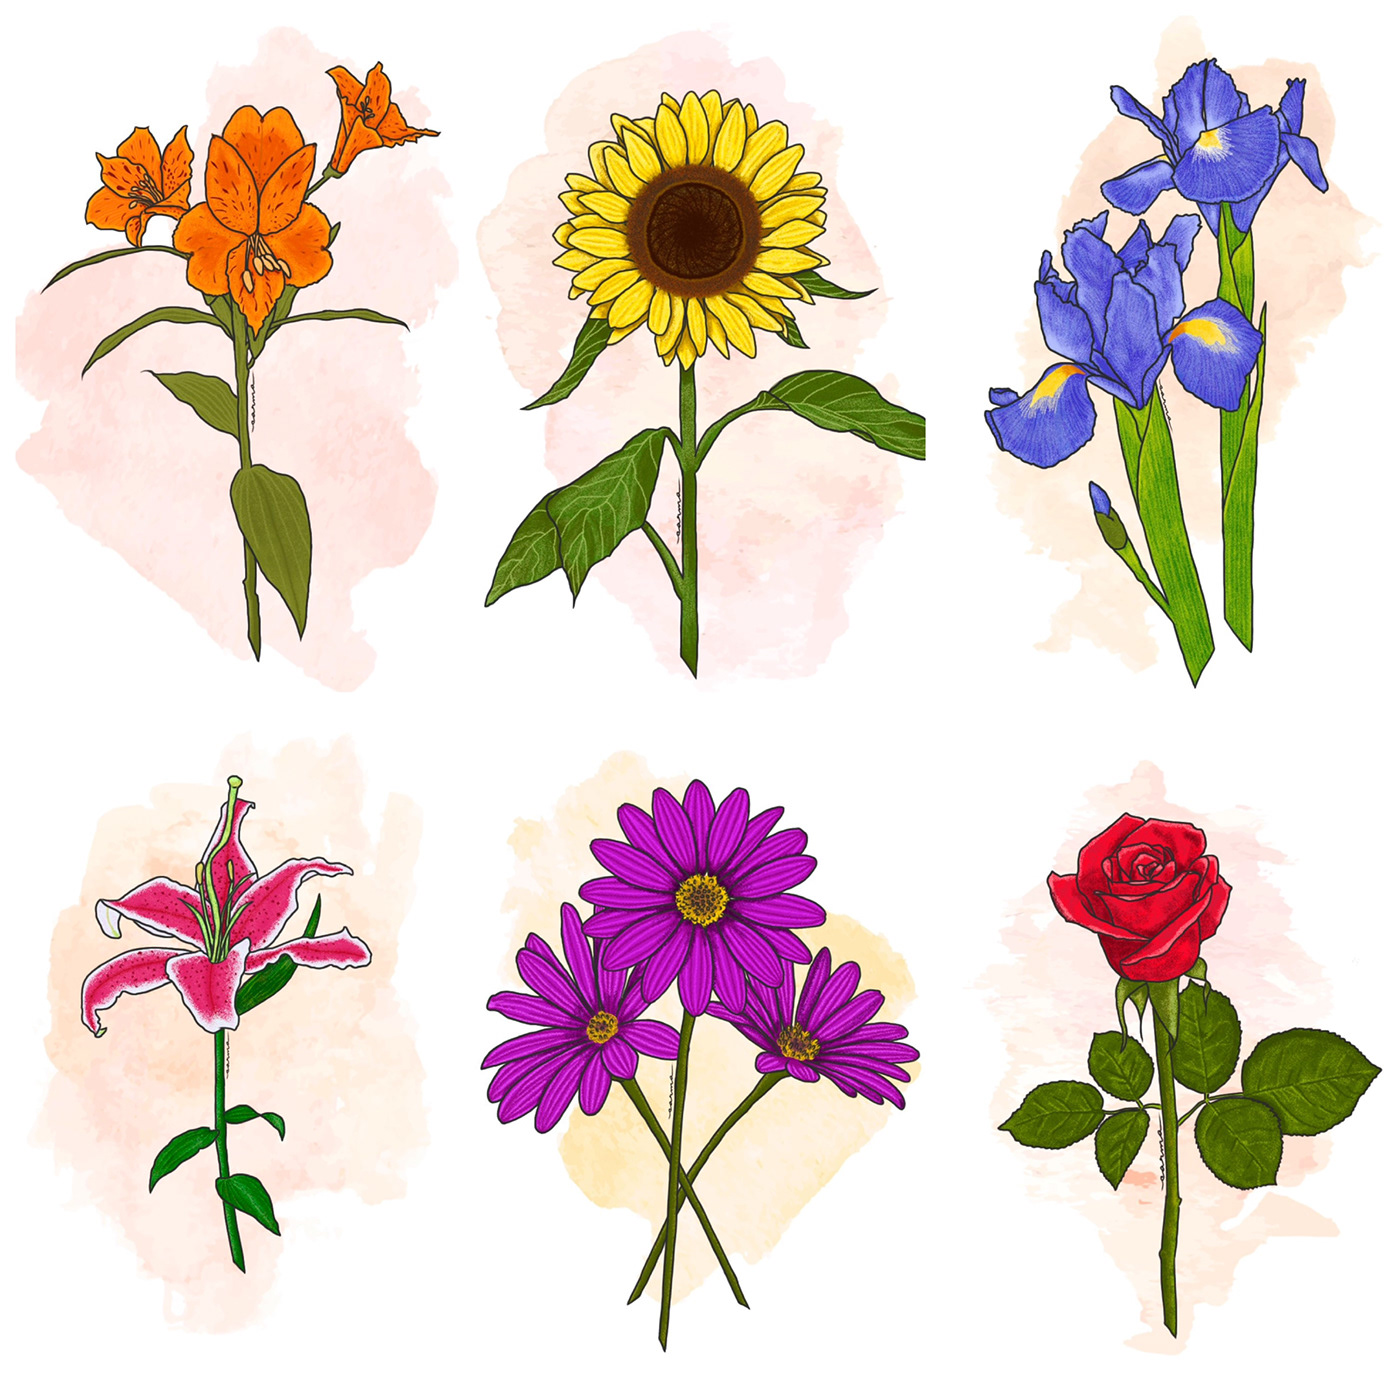 dibujo Digital Art  Drawing  floral floral art Flores flower art Flowers ILLUSTRATION  ilustracion